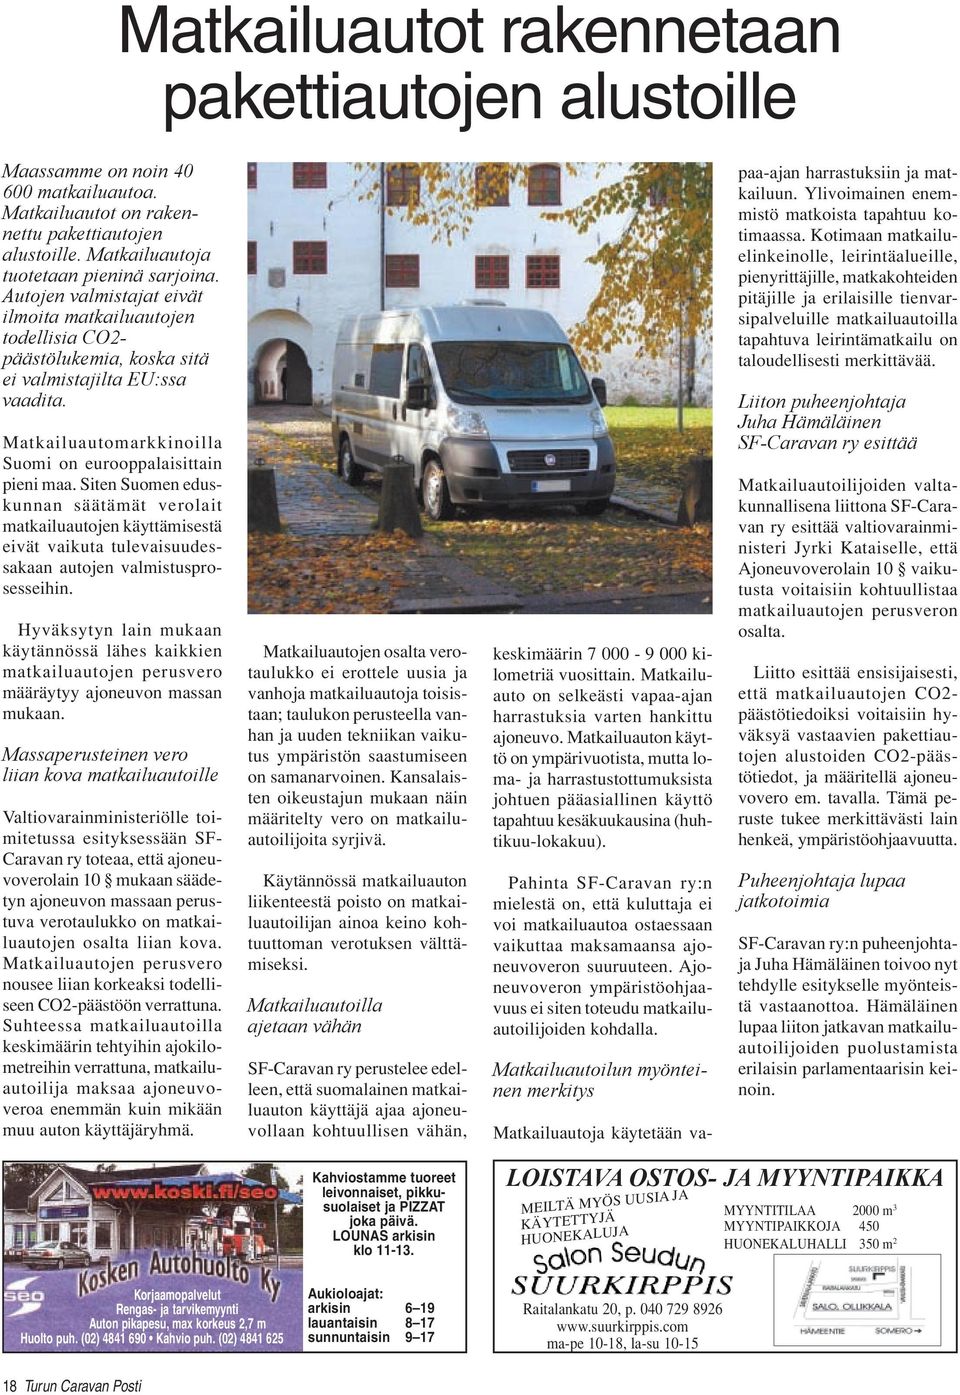 Siten Suomen eduskunnan säätämät verolait matkailuautojen käyttämisestä eivät vaikuta tulevaisuudessakaan autojen valmistusprosesseihin.